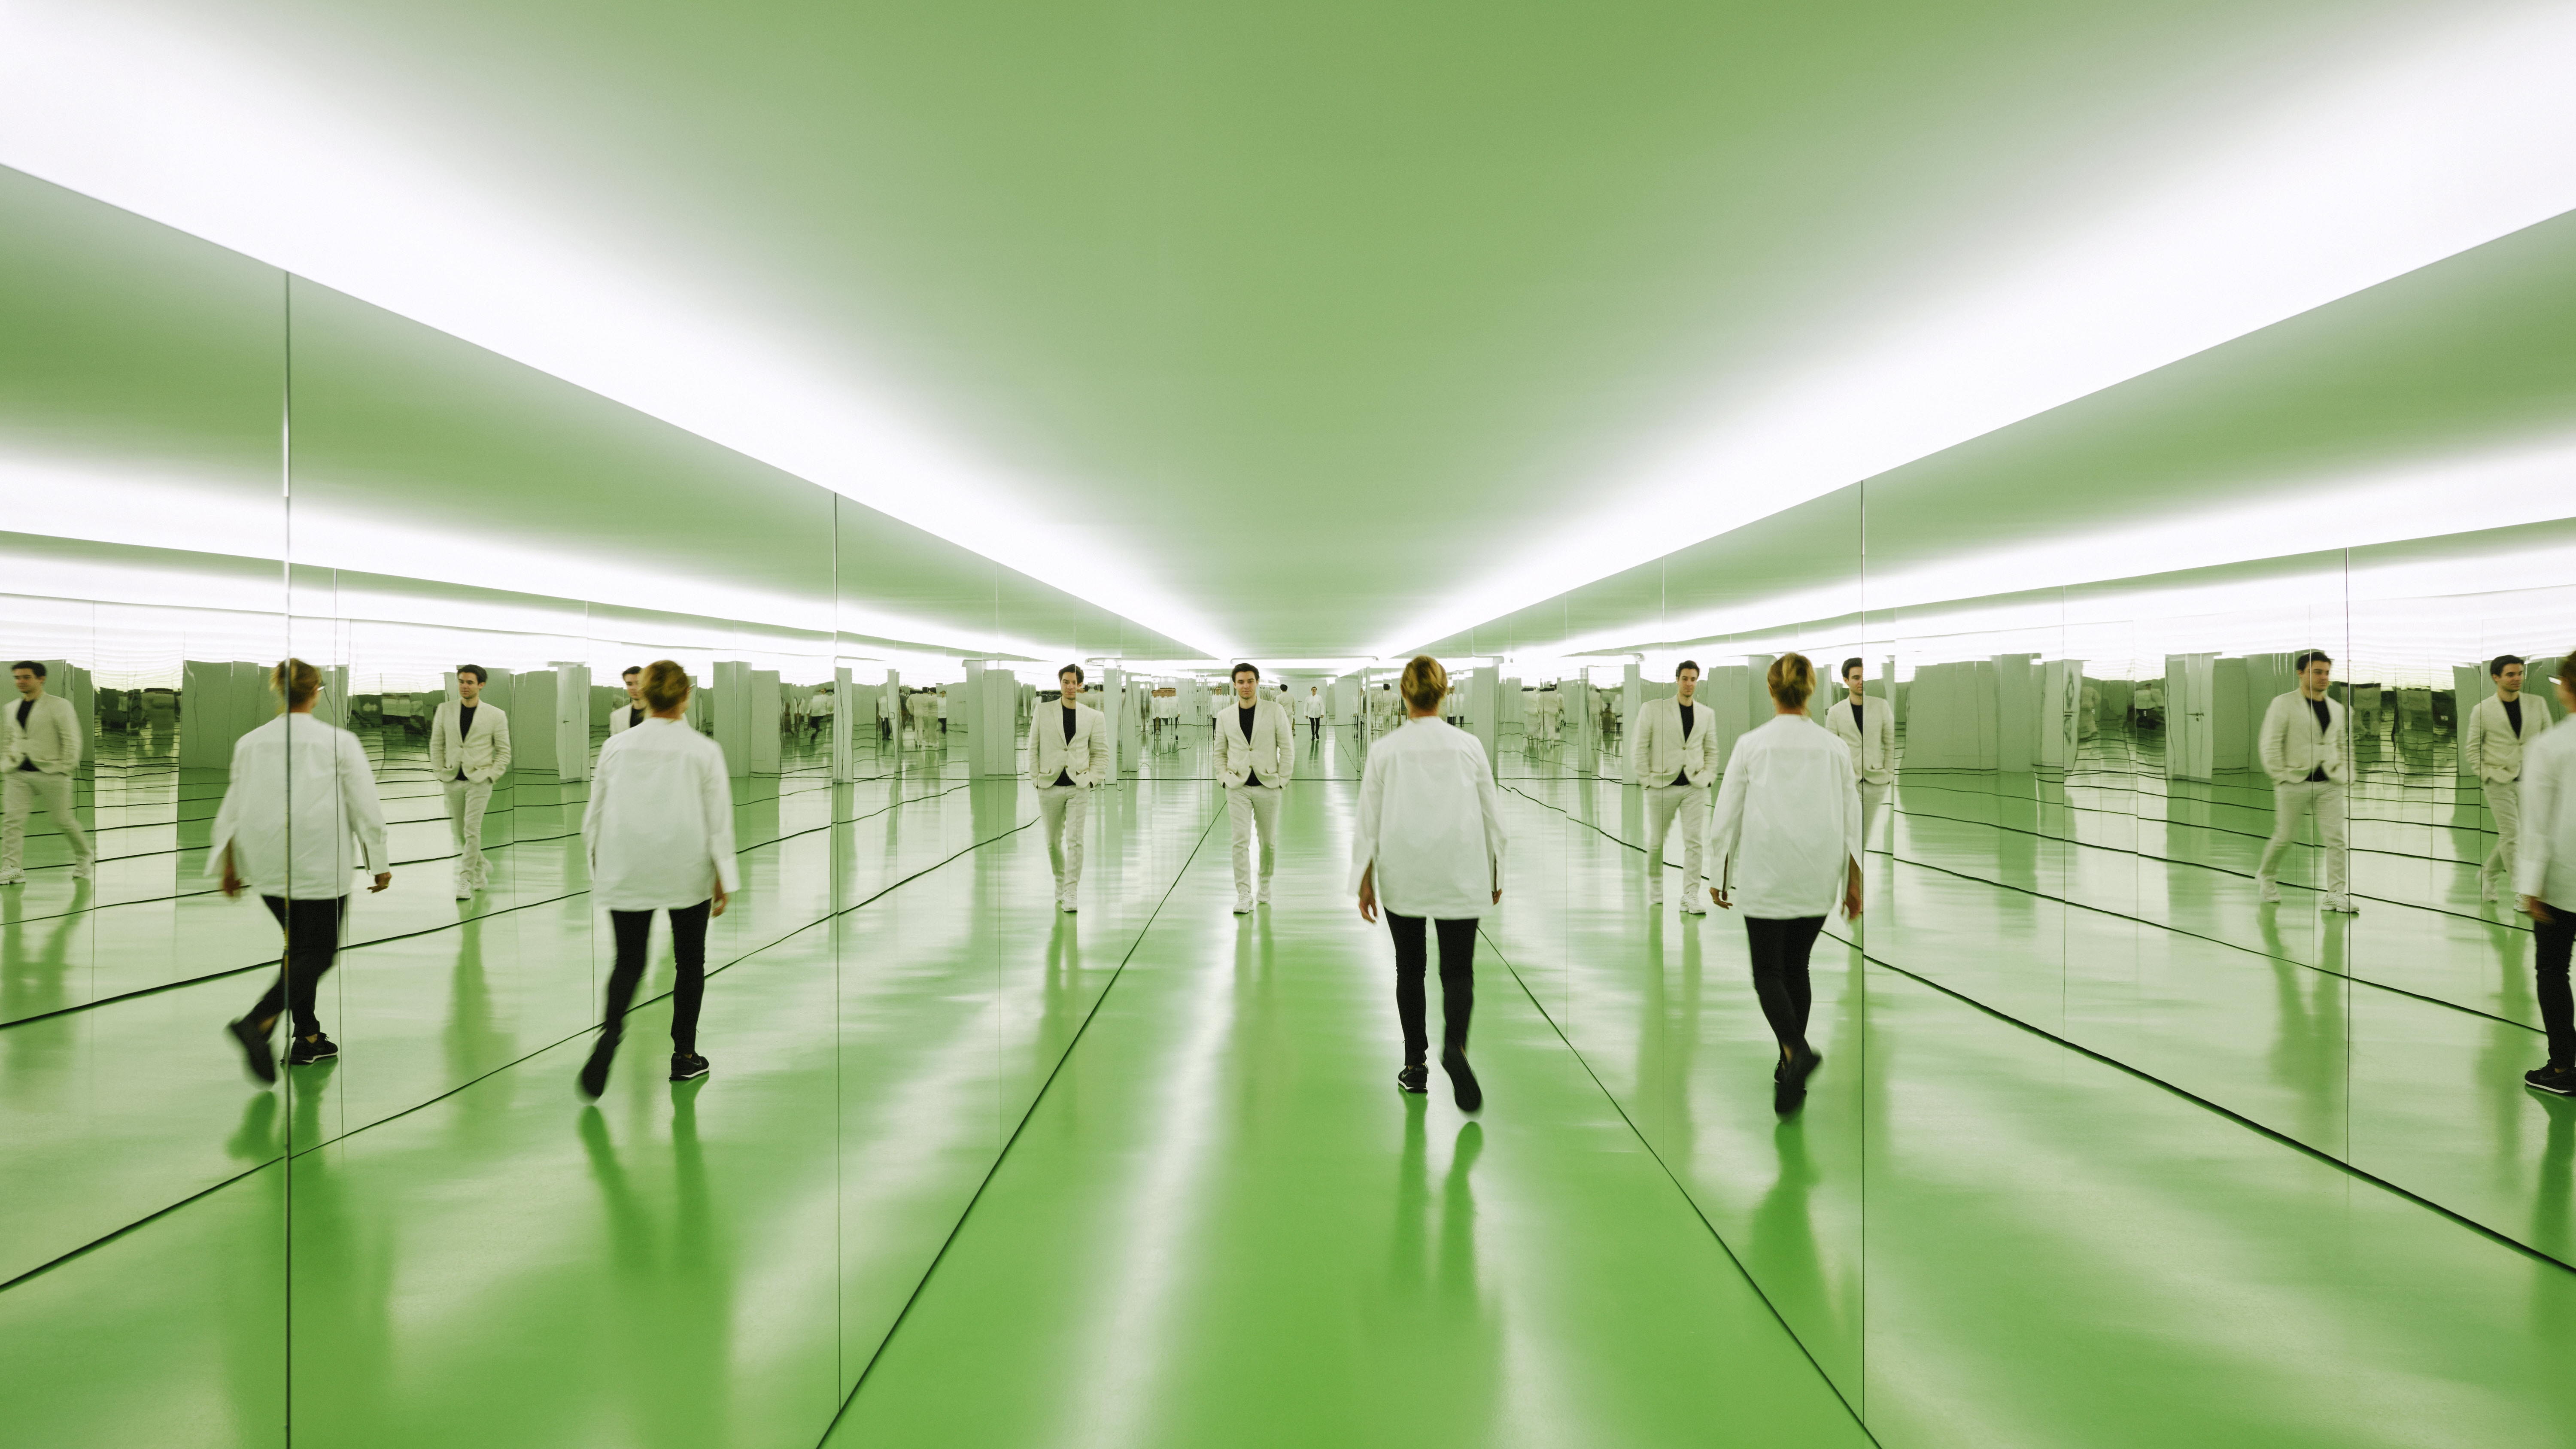 Roland Burkart, Infinity Green Installation von 2020